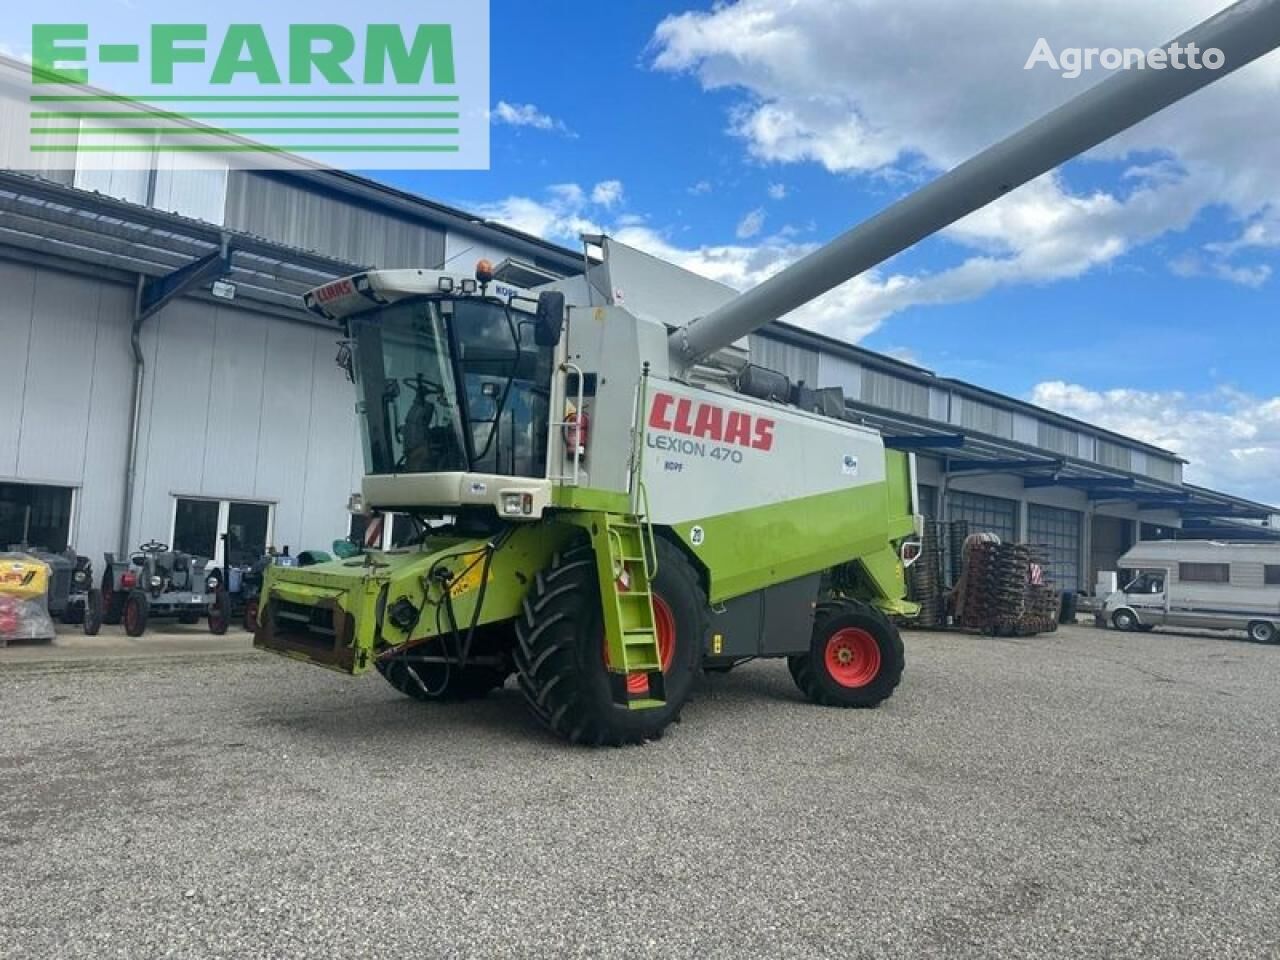 Claas lexion 470 landwirtsmaschine 穀物収穫機